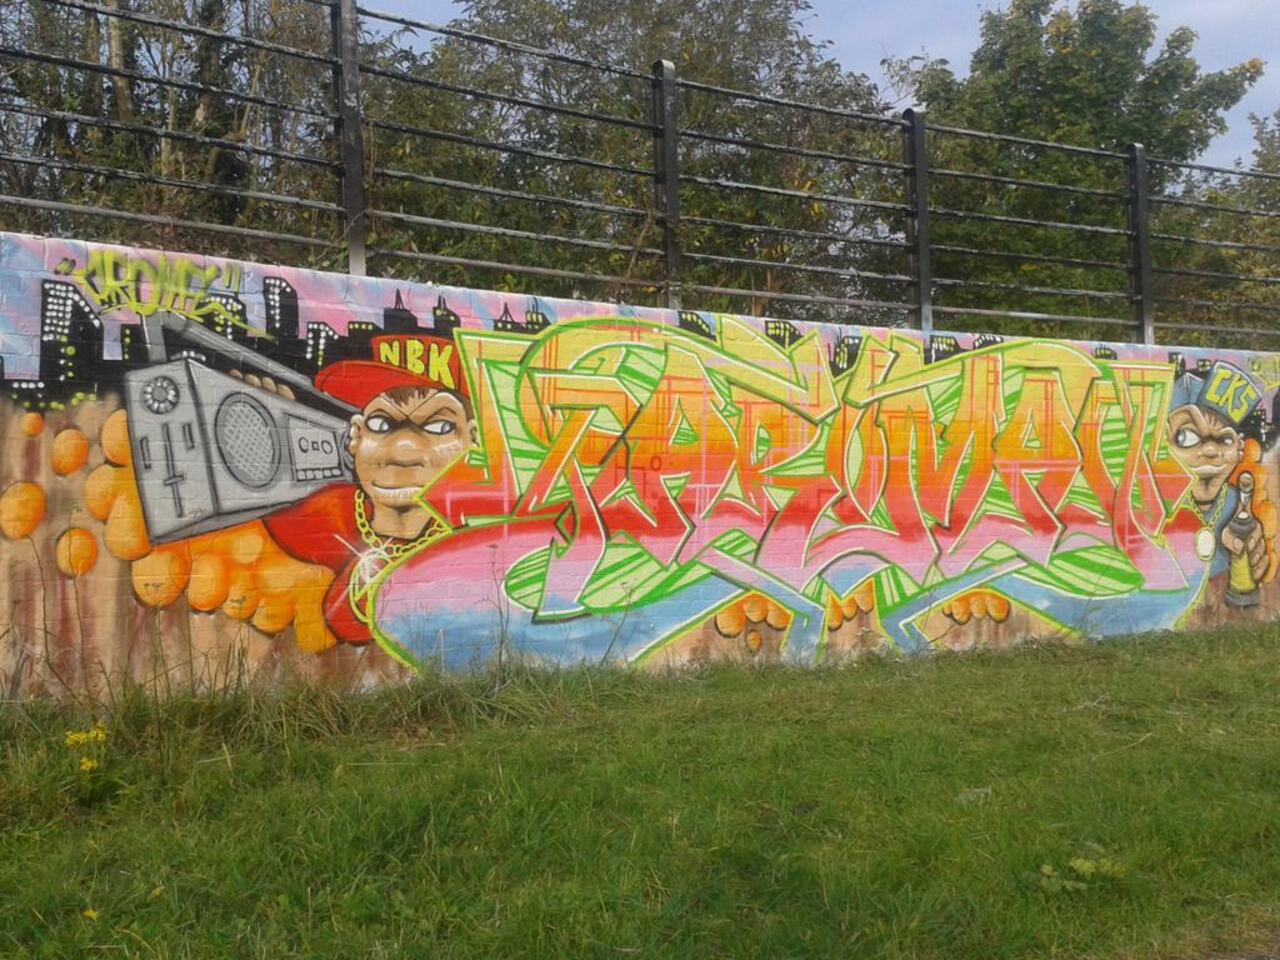 RT @scottaromaone: Todays piece #graffiti #streetart https://t.co/g2CakqscXv